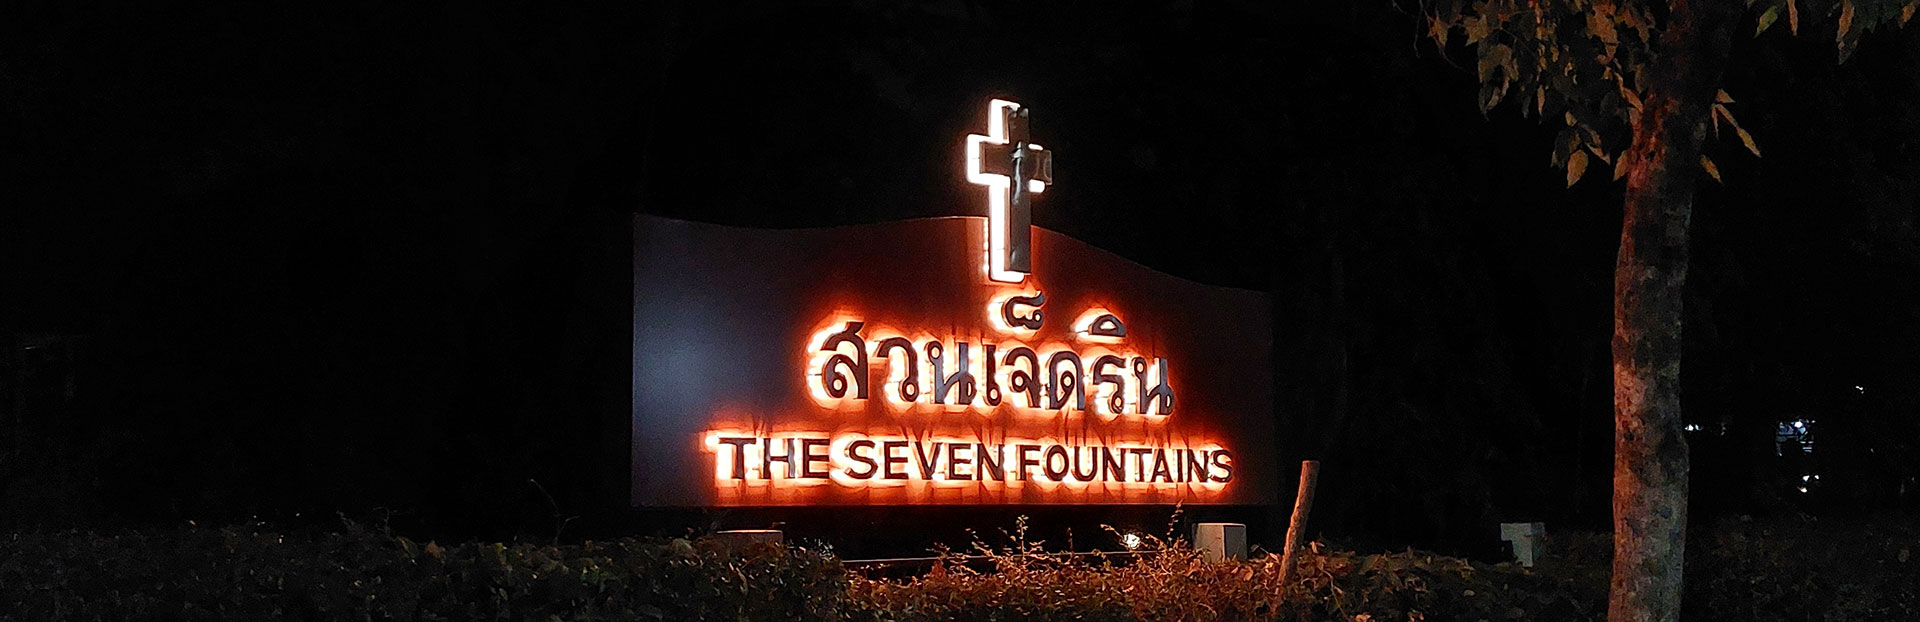 « Seven Fountains » : sept sources de l’Esprit pour trouver sens à sa vie